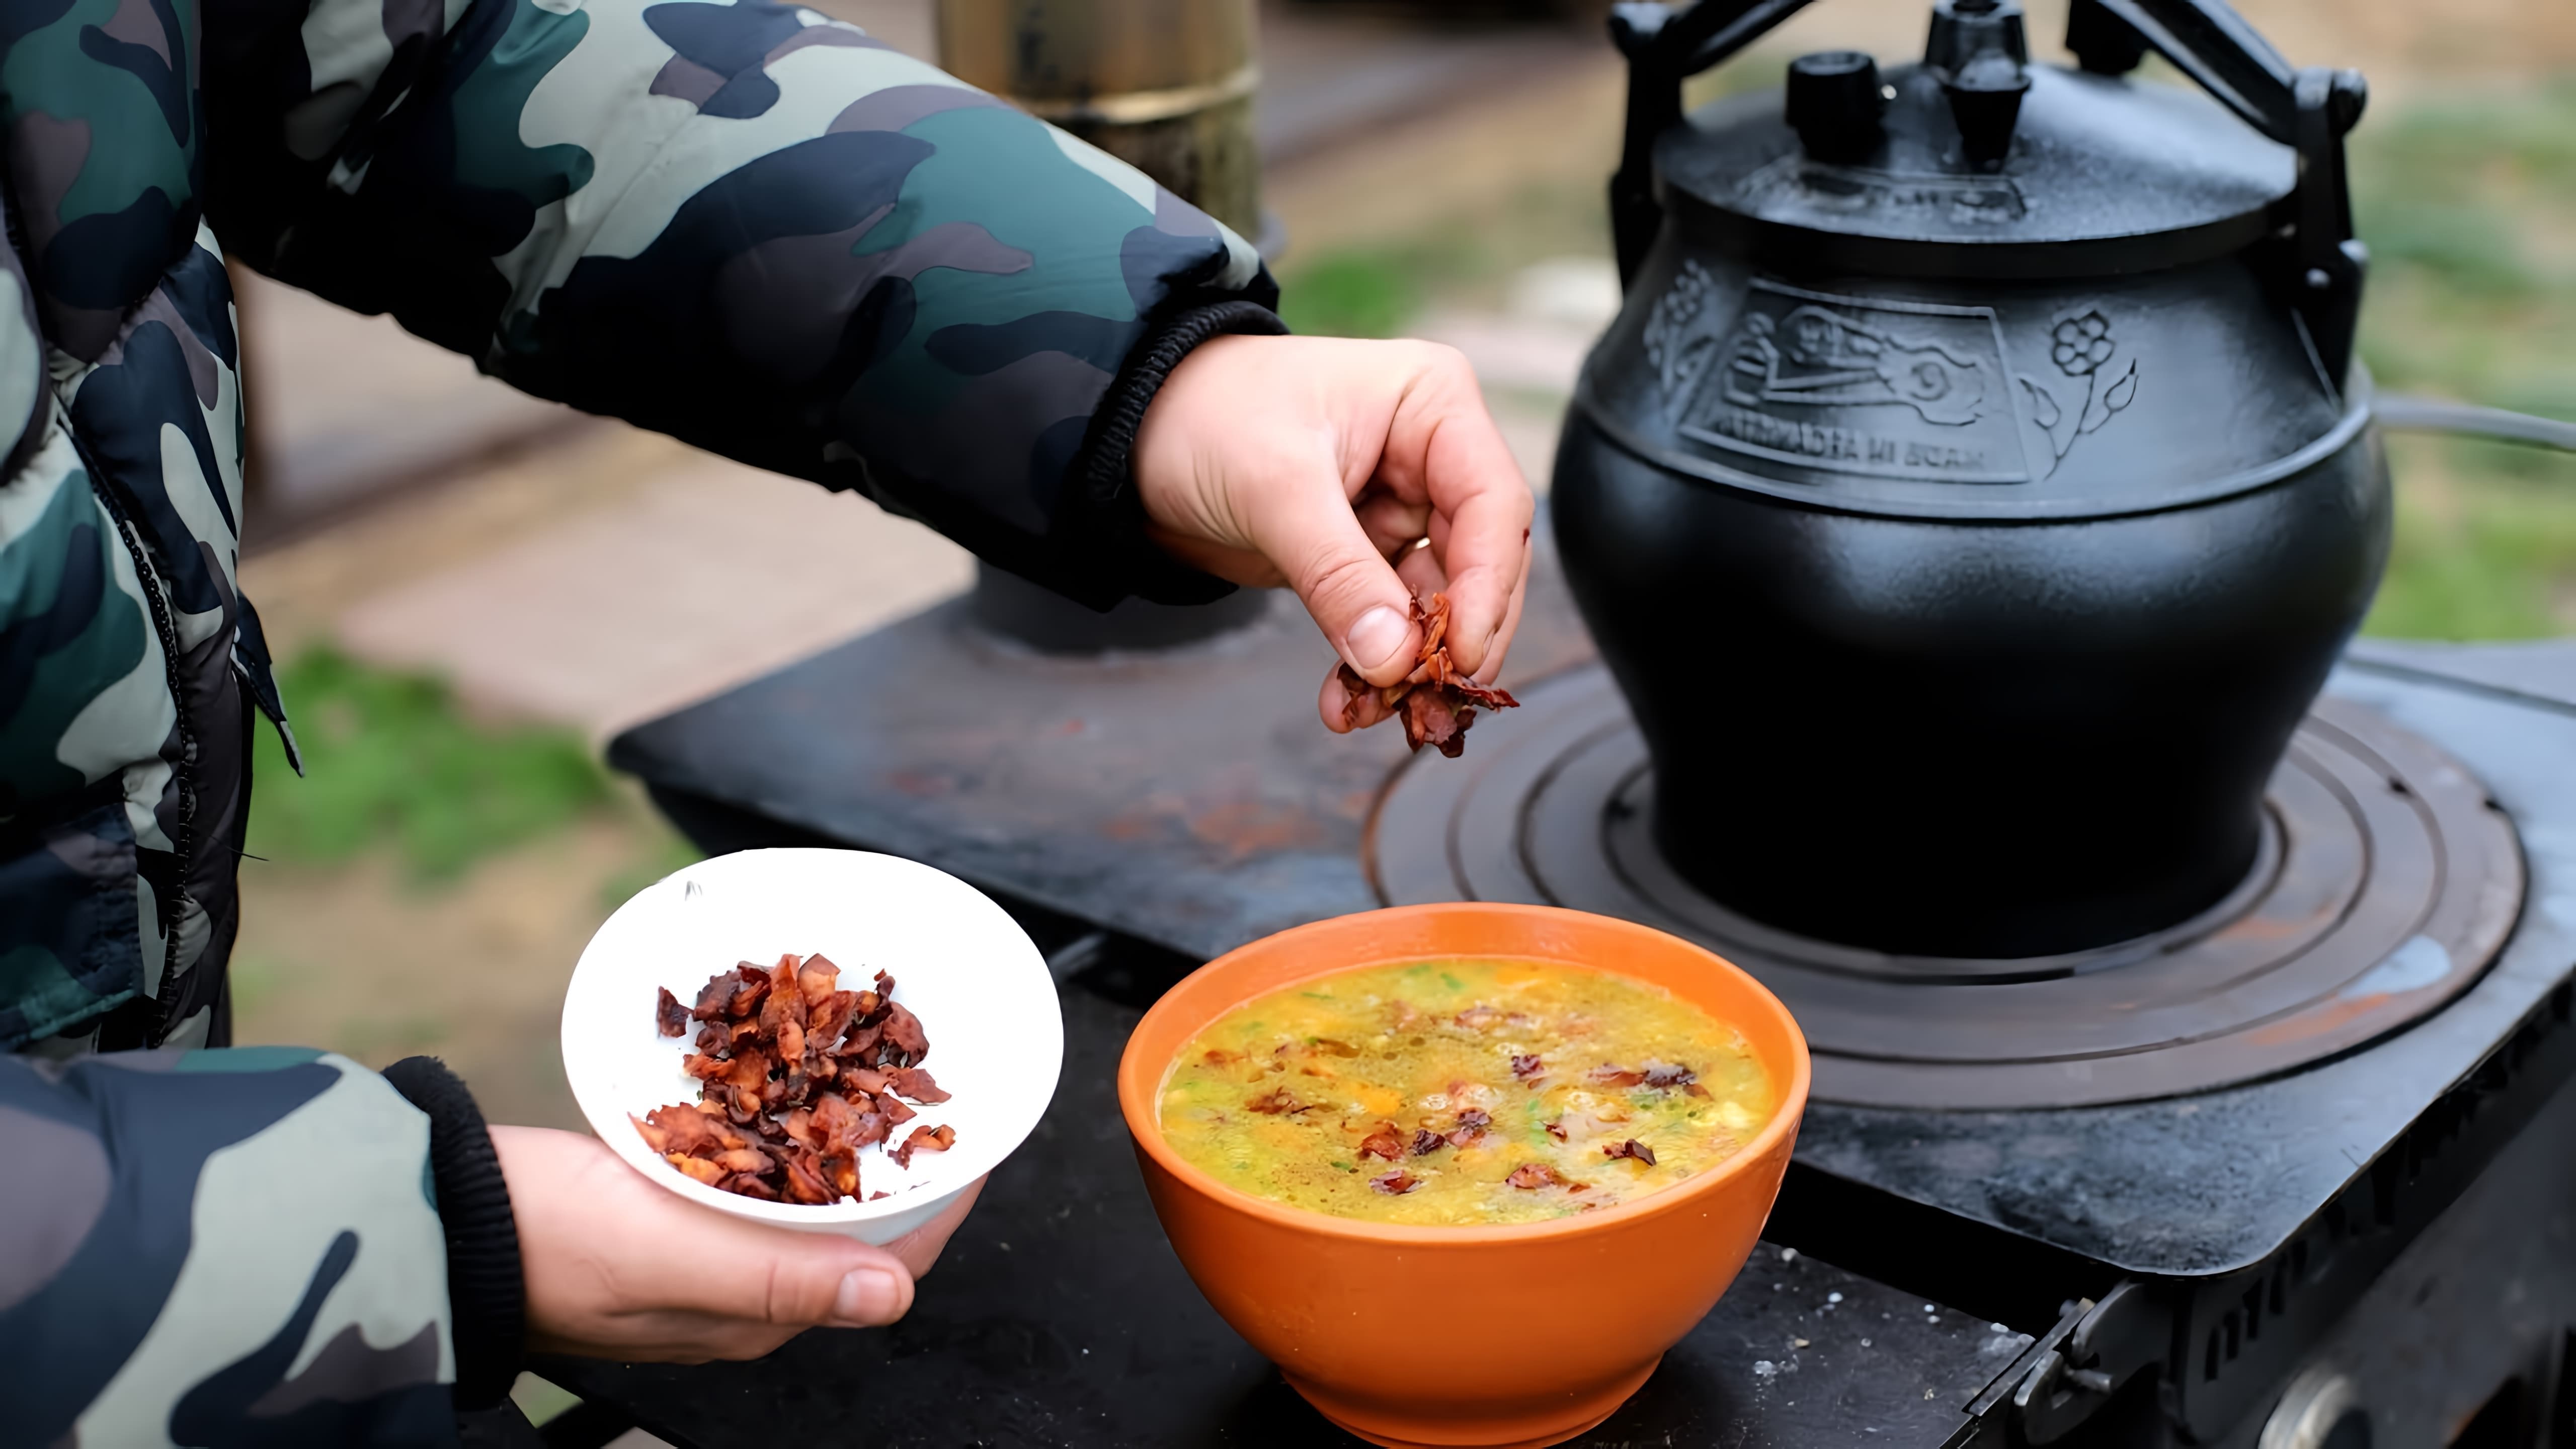 Видео как приготовить гороховый суп с копченым мясом и беконом в афганском котле/горшке